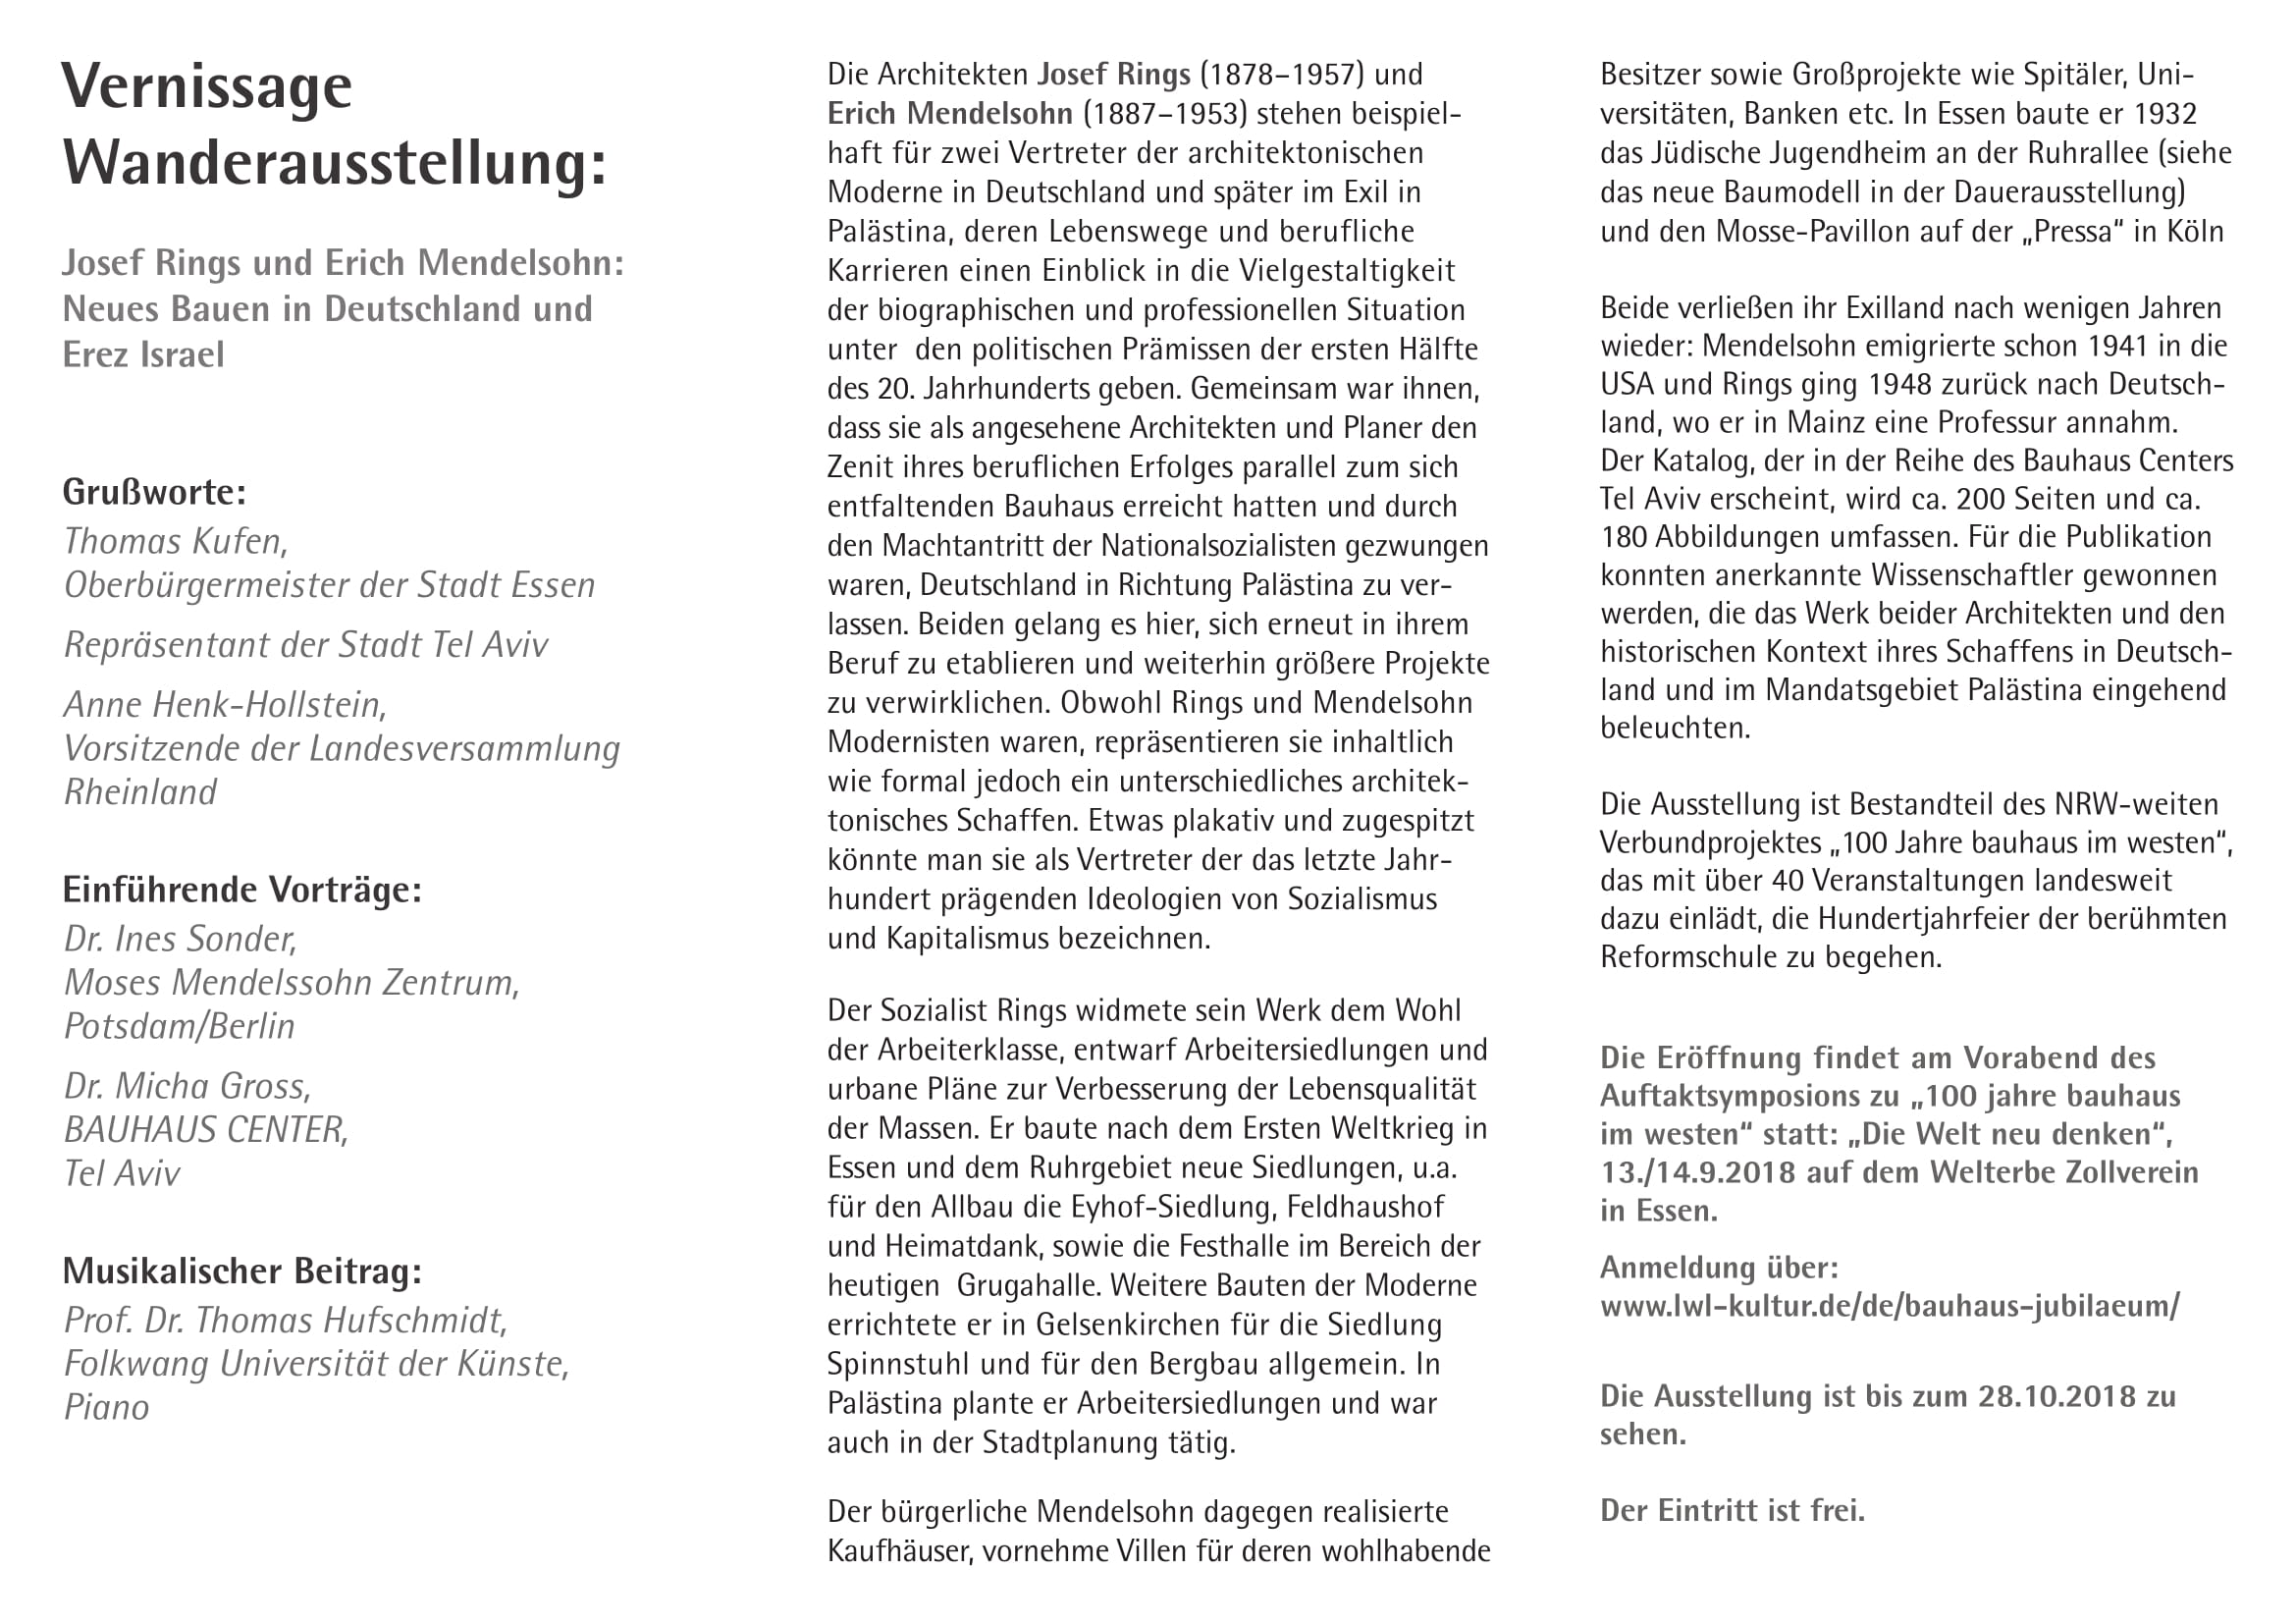 | Josef Rings und Erich Mendelsohn: Neues Bauen in Deutschland und Erez Israel